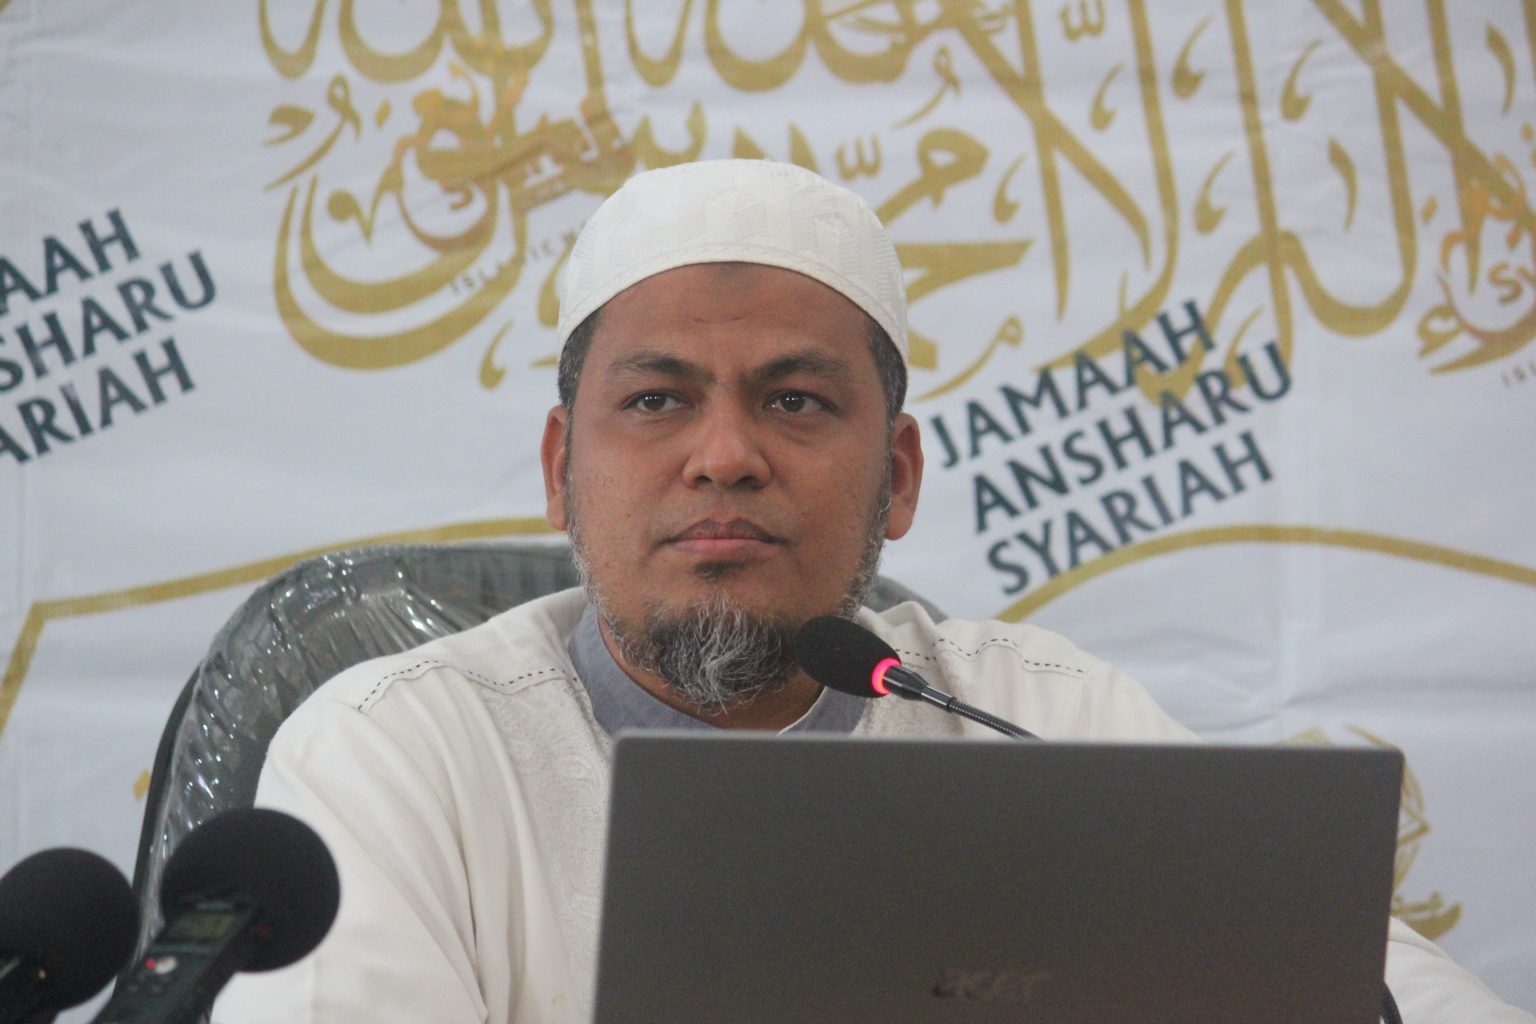 Jamaah Ansharu Syariah Respon RUU Haluan Ideologi Pancasila